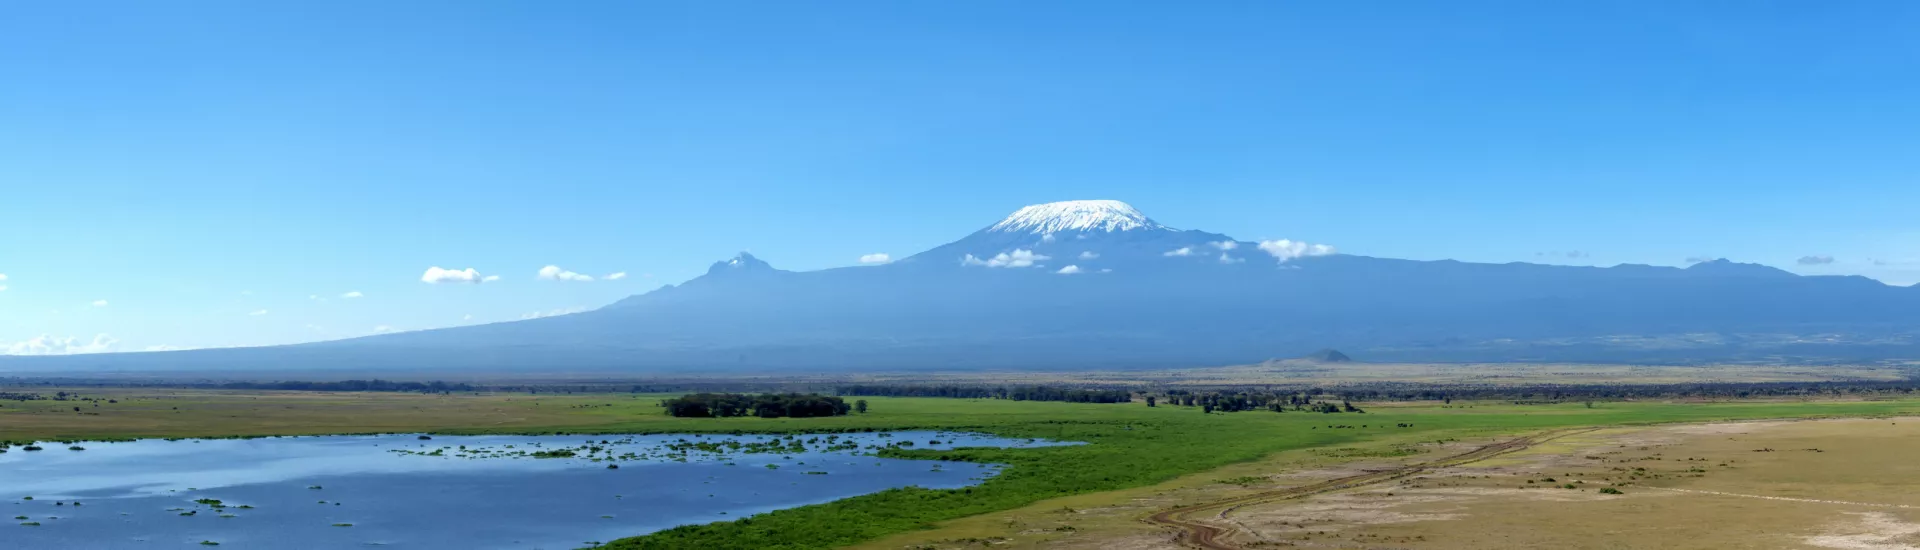 The majestic Kilimanjaro Mountain in Tanzania